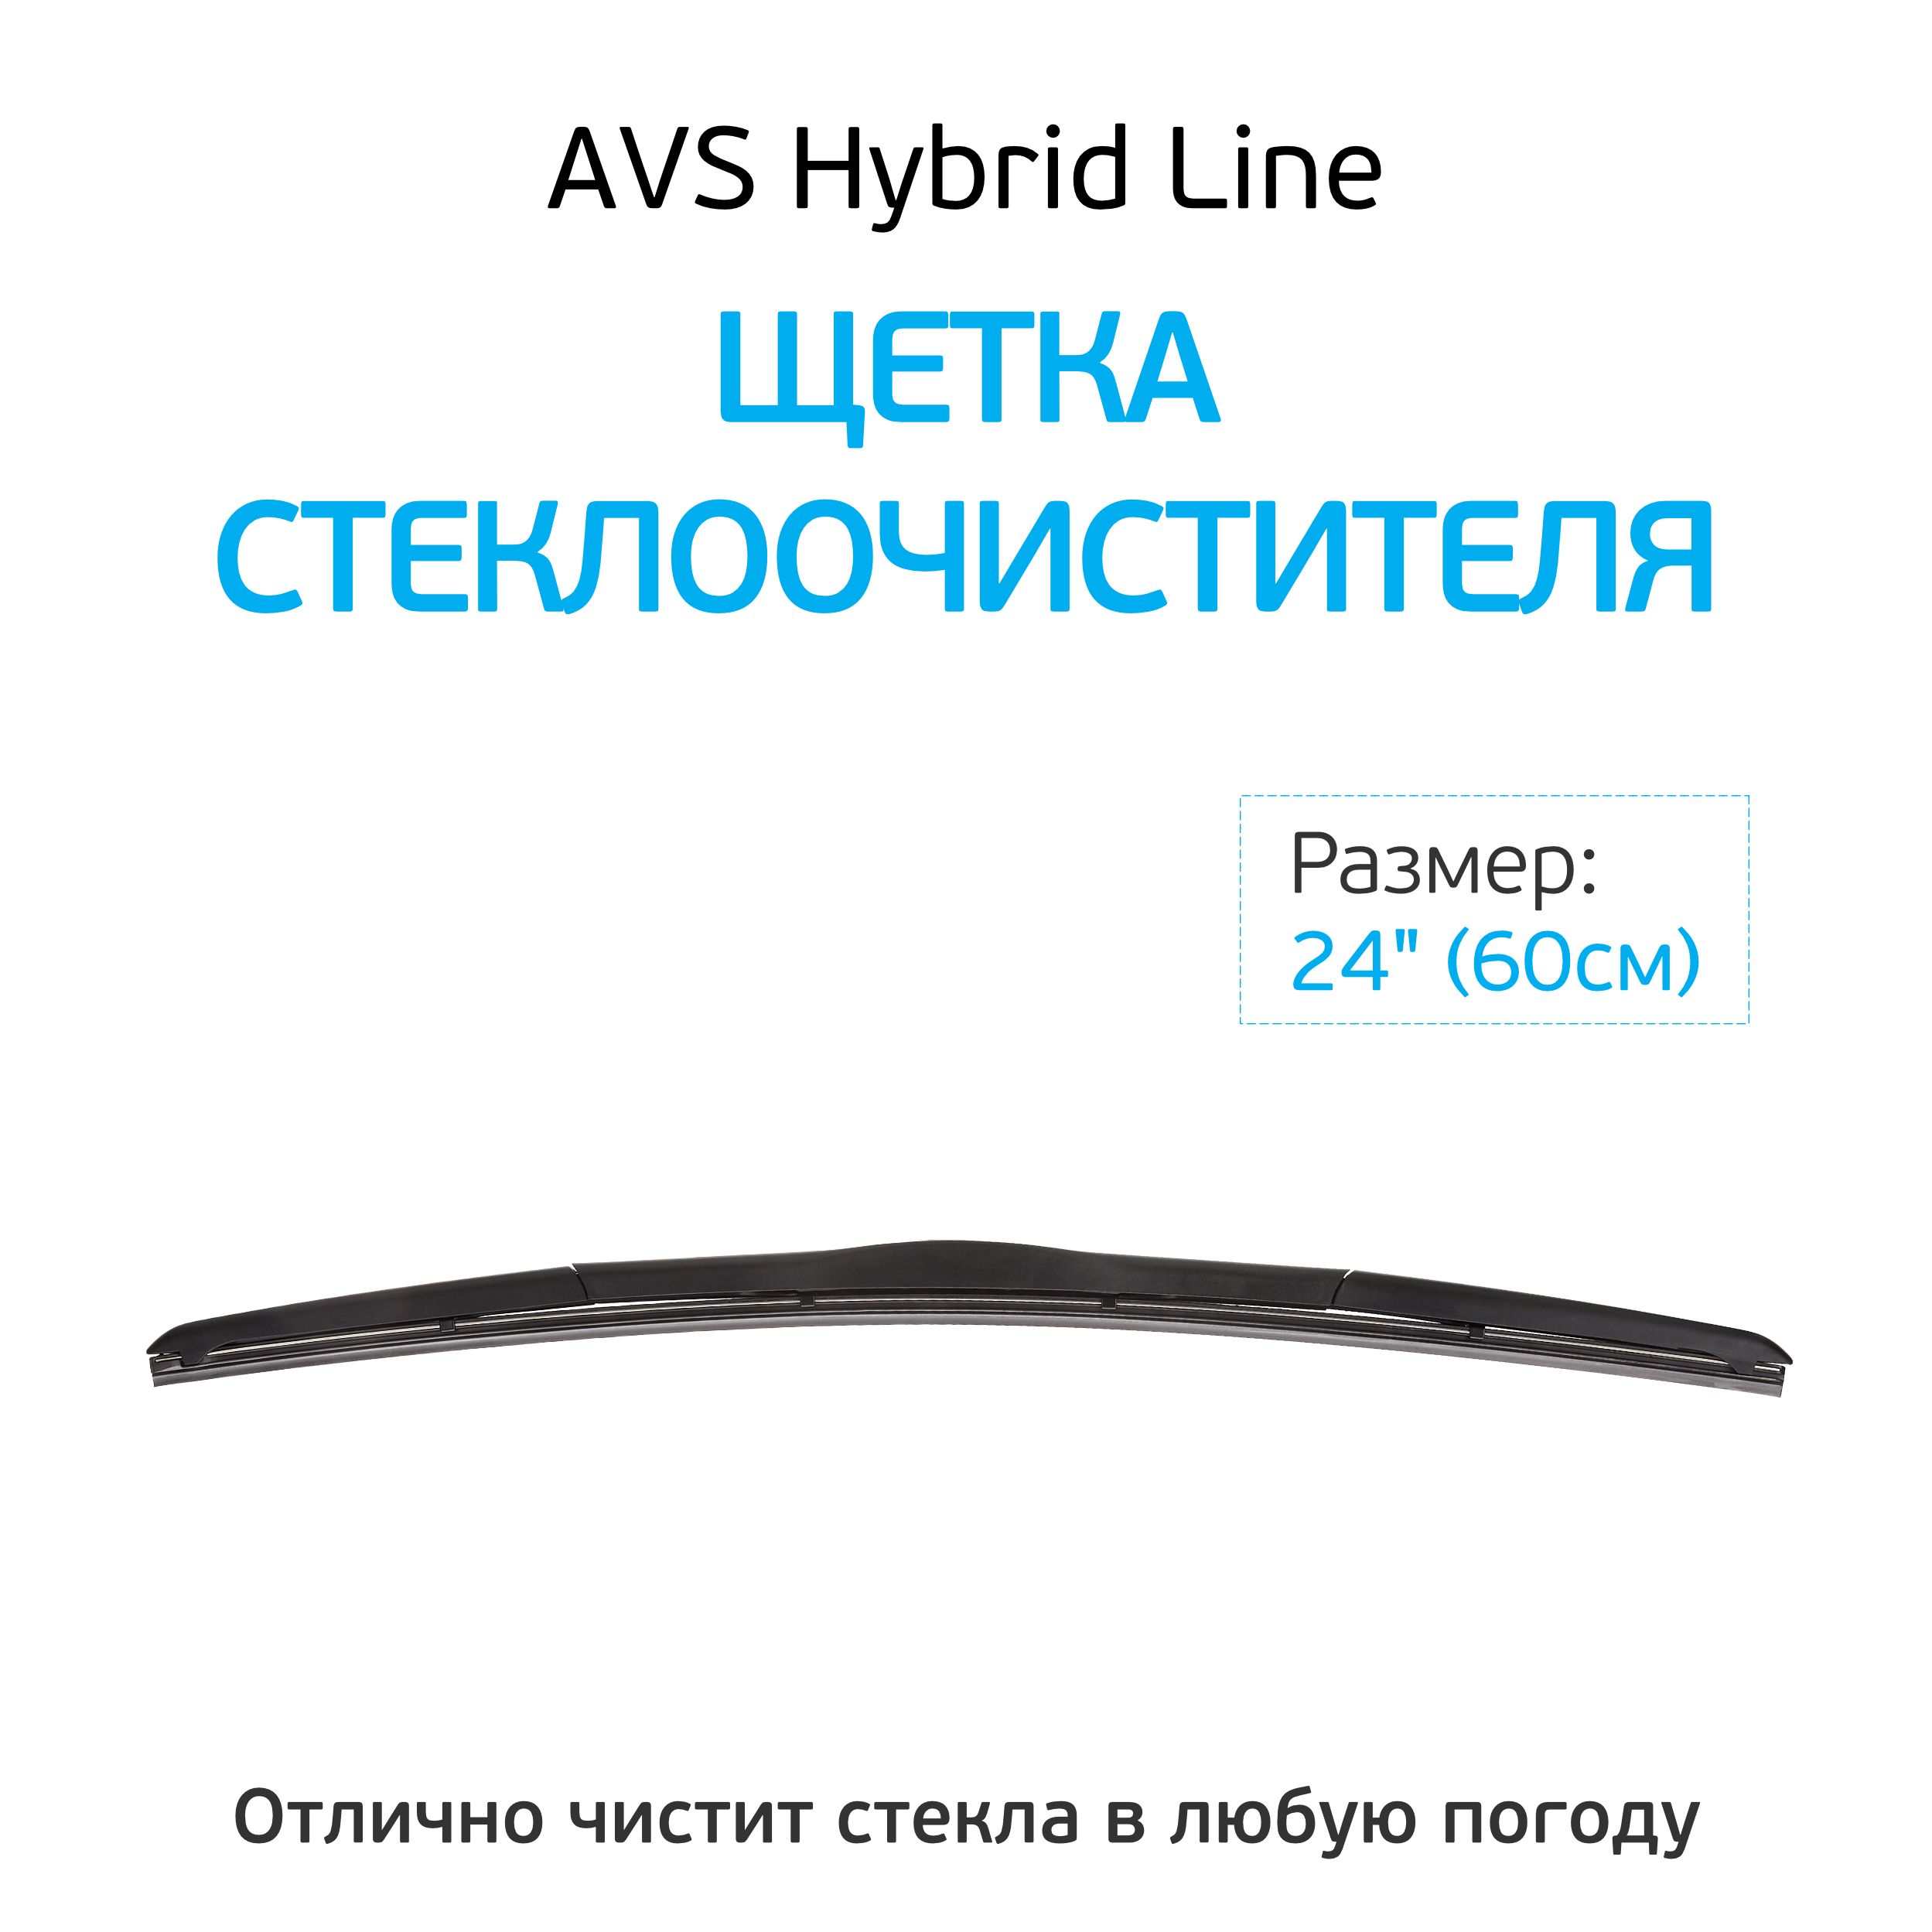 Hybrid line